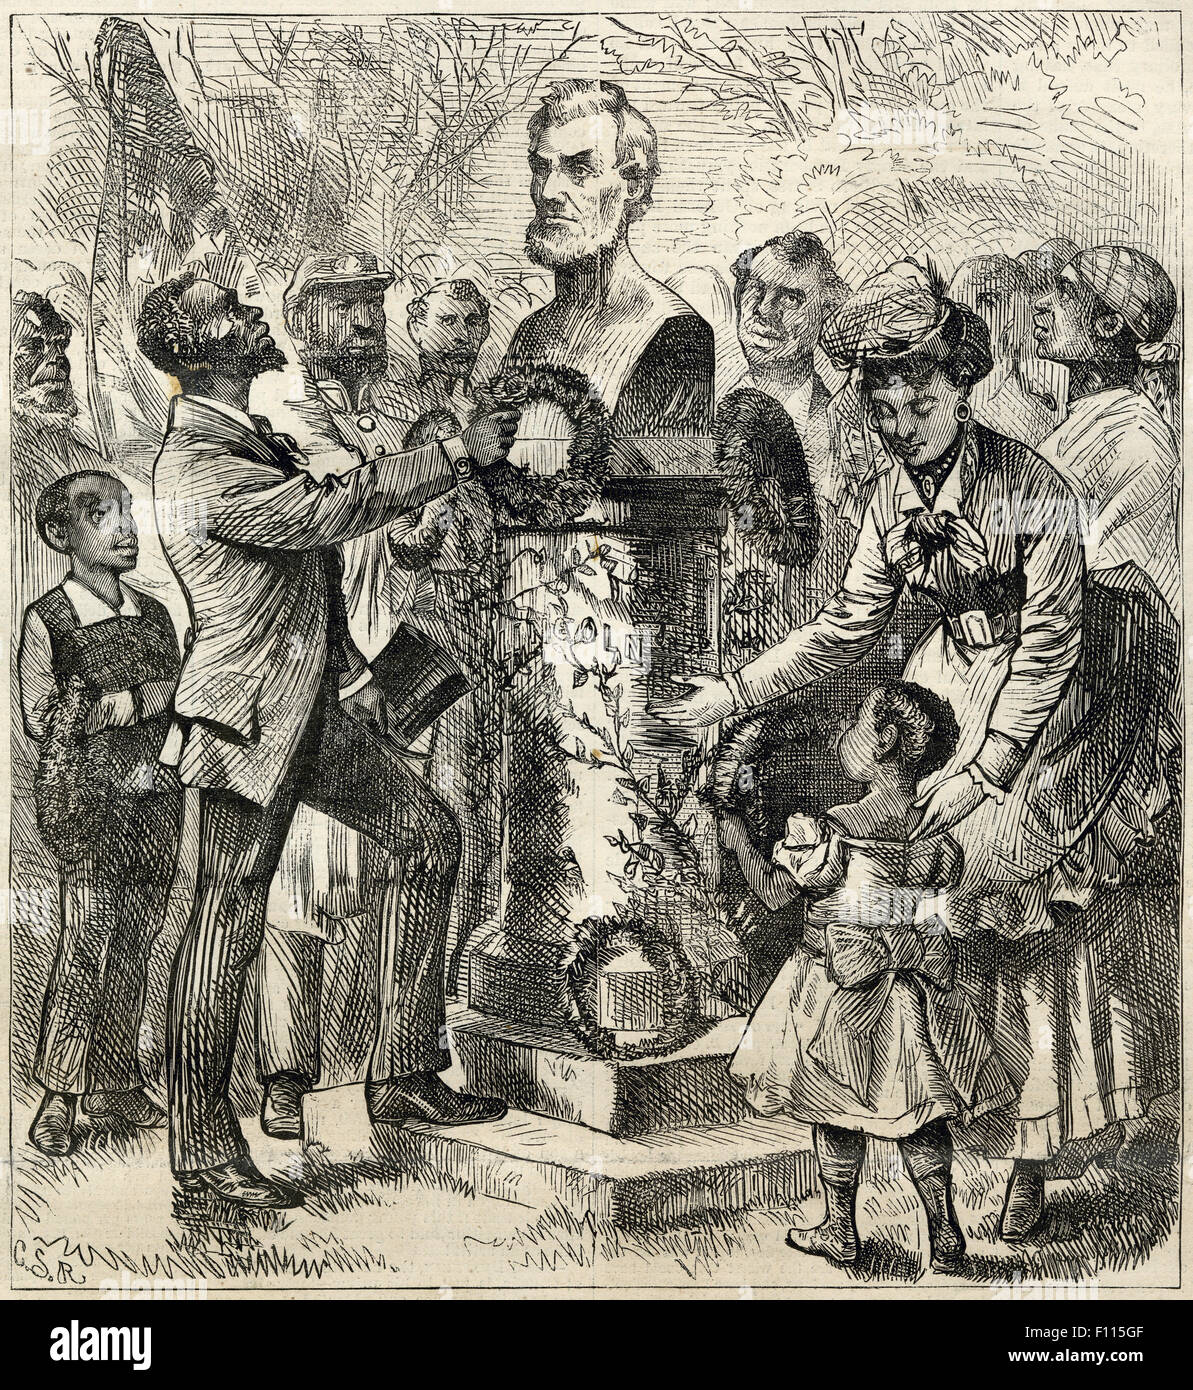 Antike 1872 Gravur von Harper wöchentlich, Lincoln die Befreier, gezeichnet von c.s. Reinhart, zeigt eine Szene in New York City am Jahrestag der Passage der fünfzehnte Änderung zur Vereinigte Staaten Beschaffenheit. Stockfoto